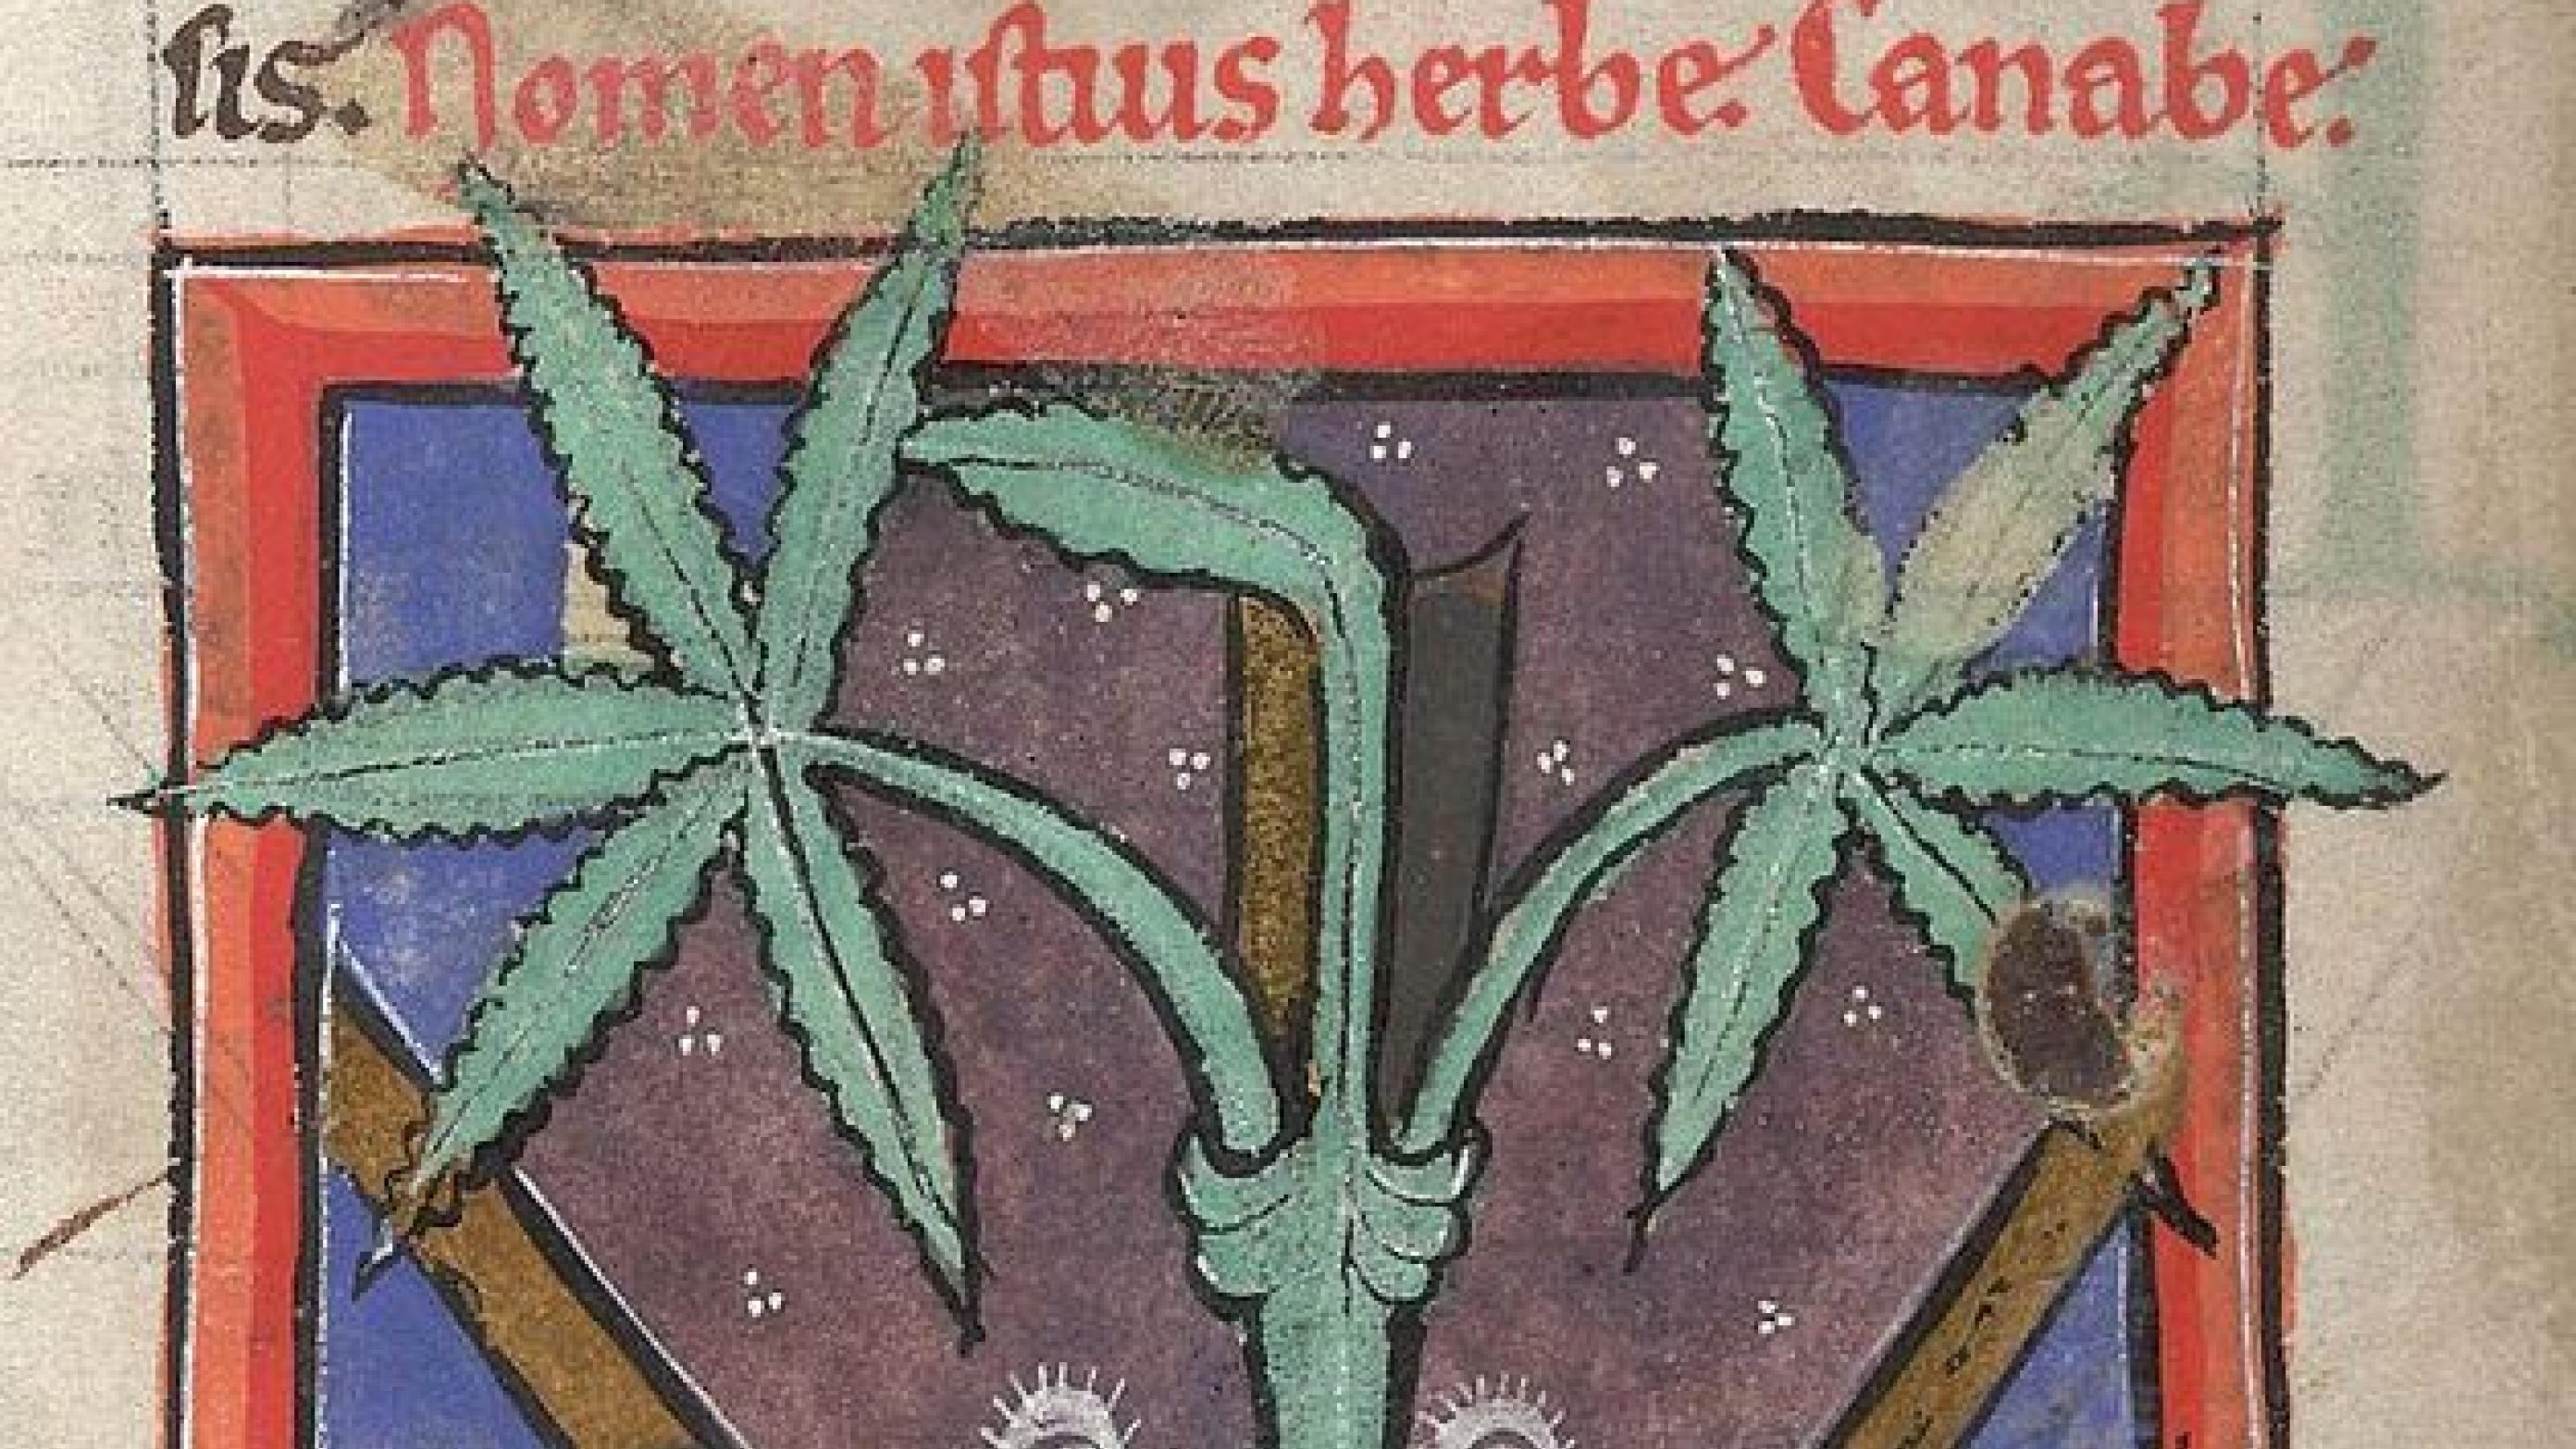 Medicinsk cannabis - illustration fra middelalderlig lægebog.